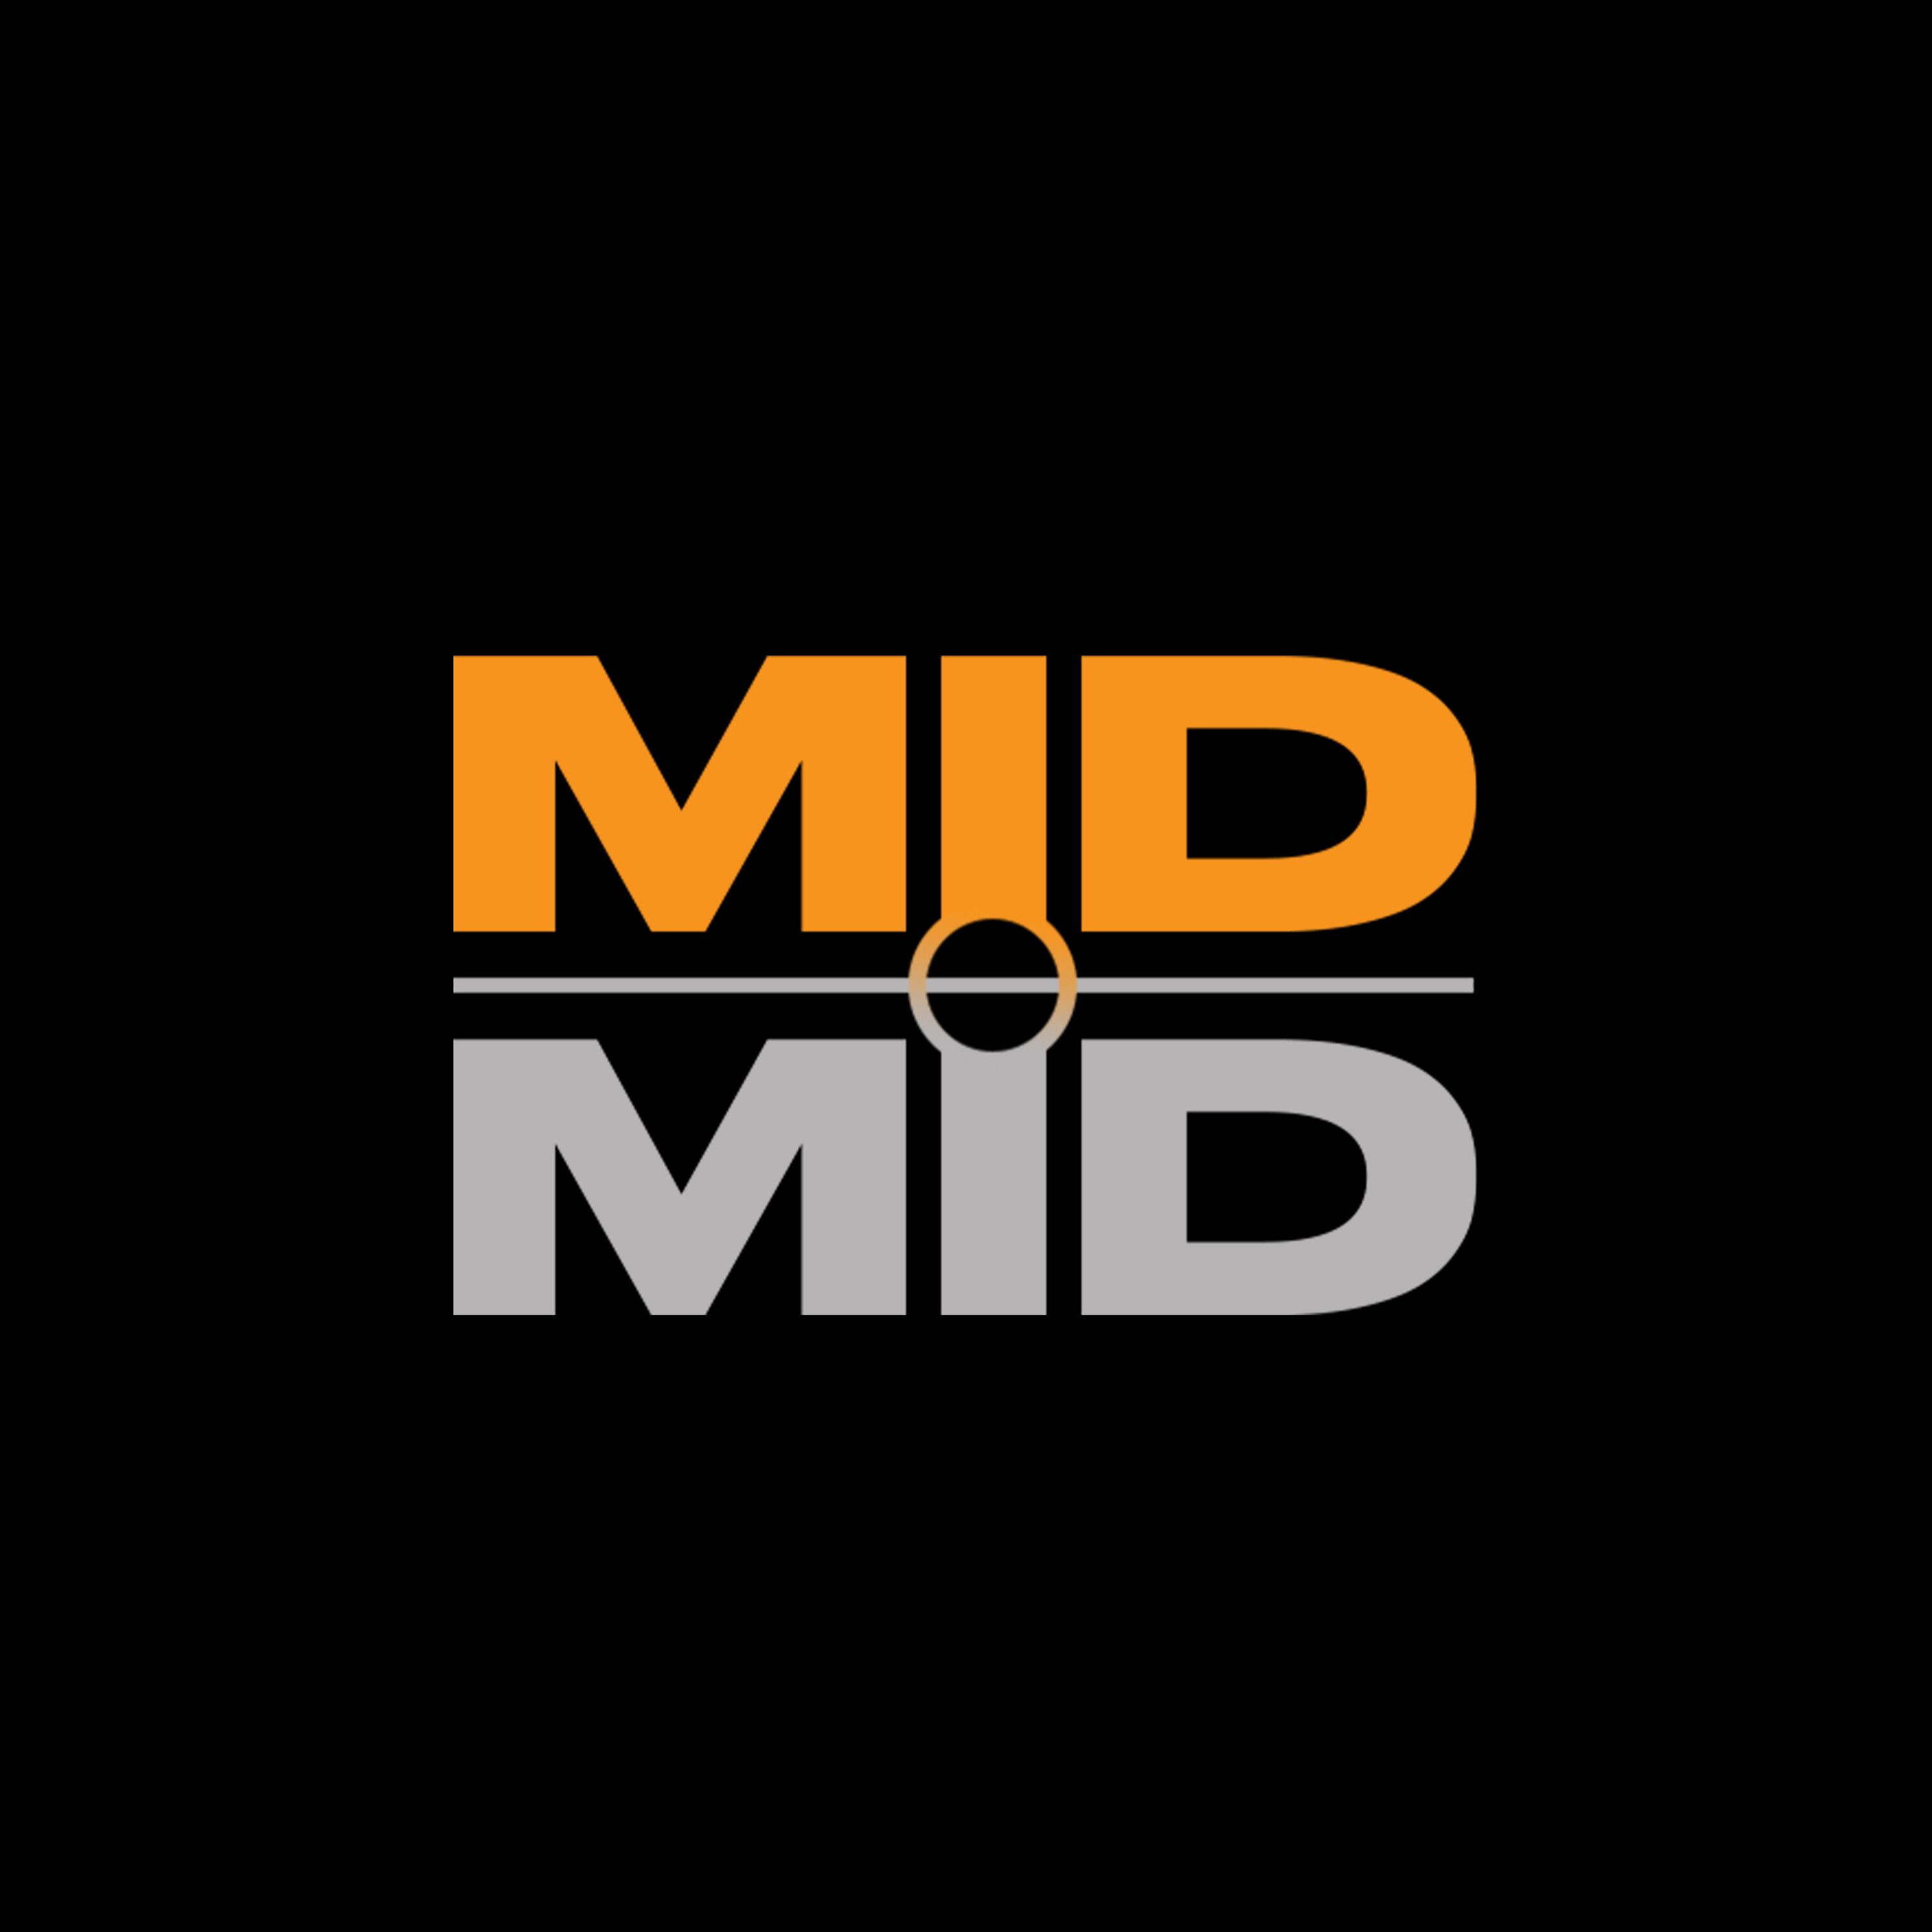 MIDMID - Een tocht door de Pro League met Gilles Mbiye-Beya en Yanko Beeckman